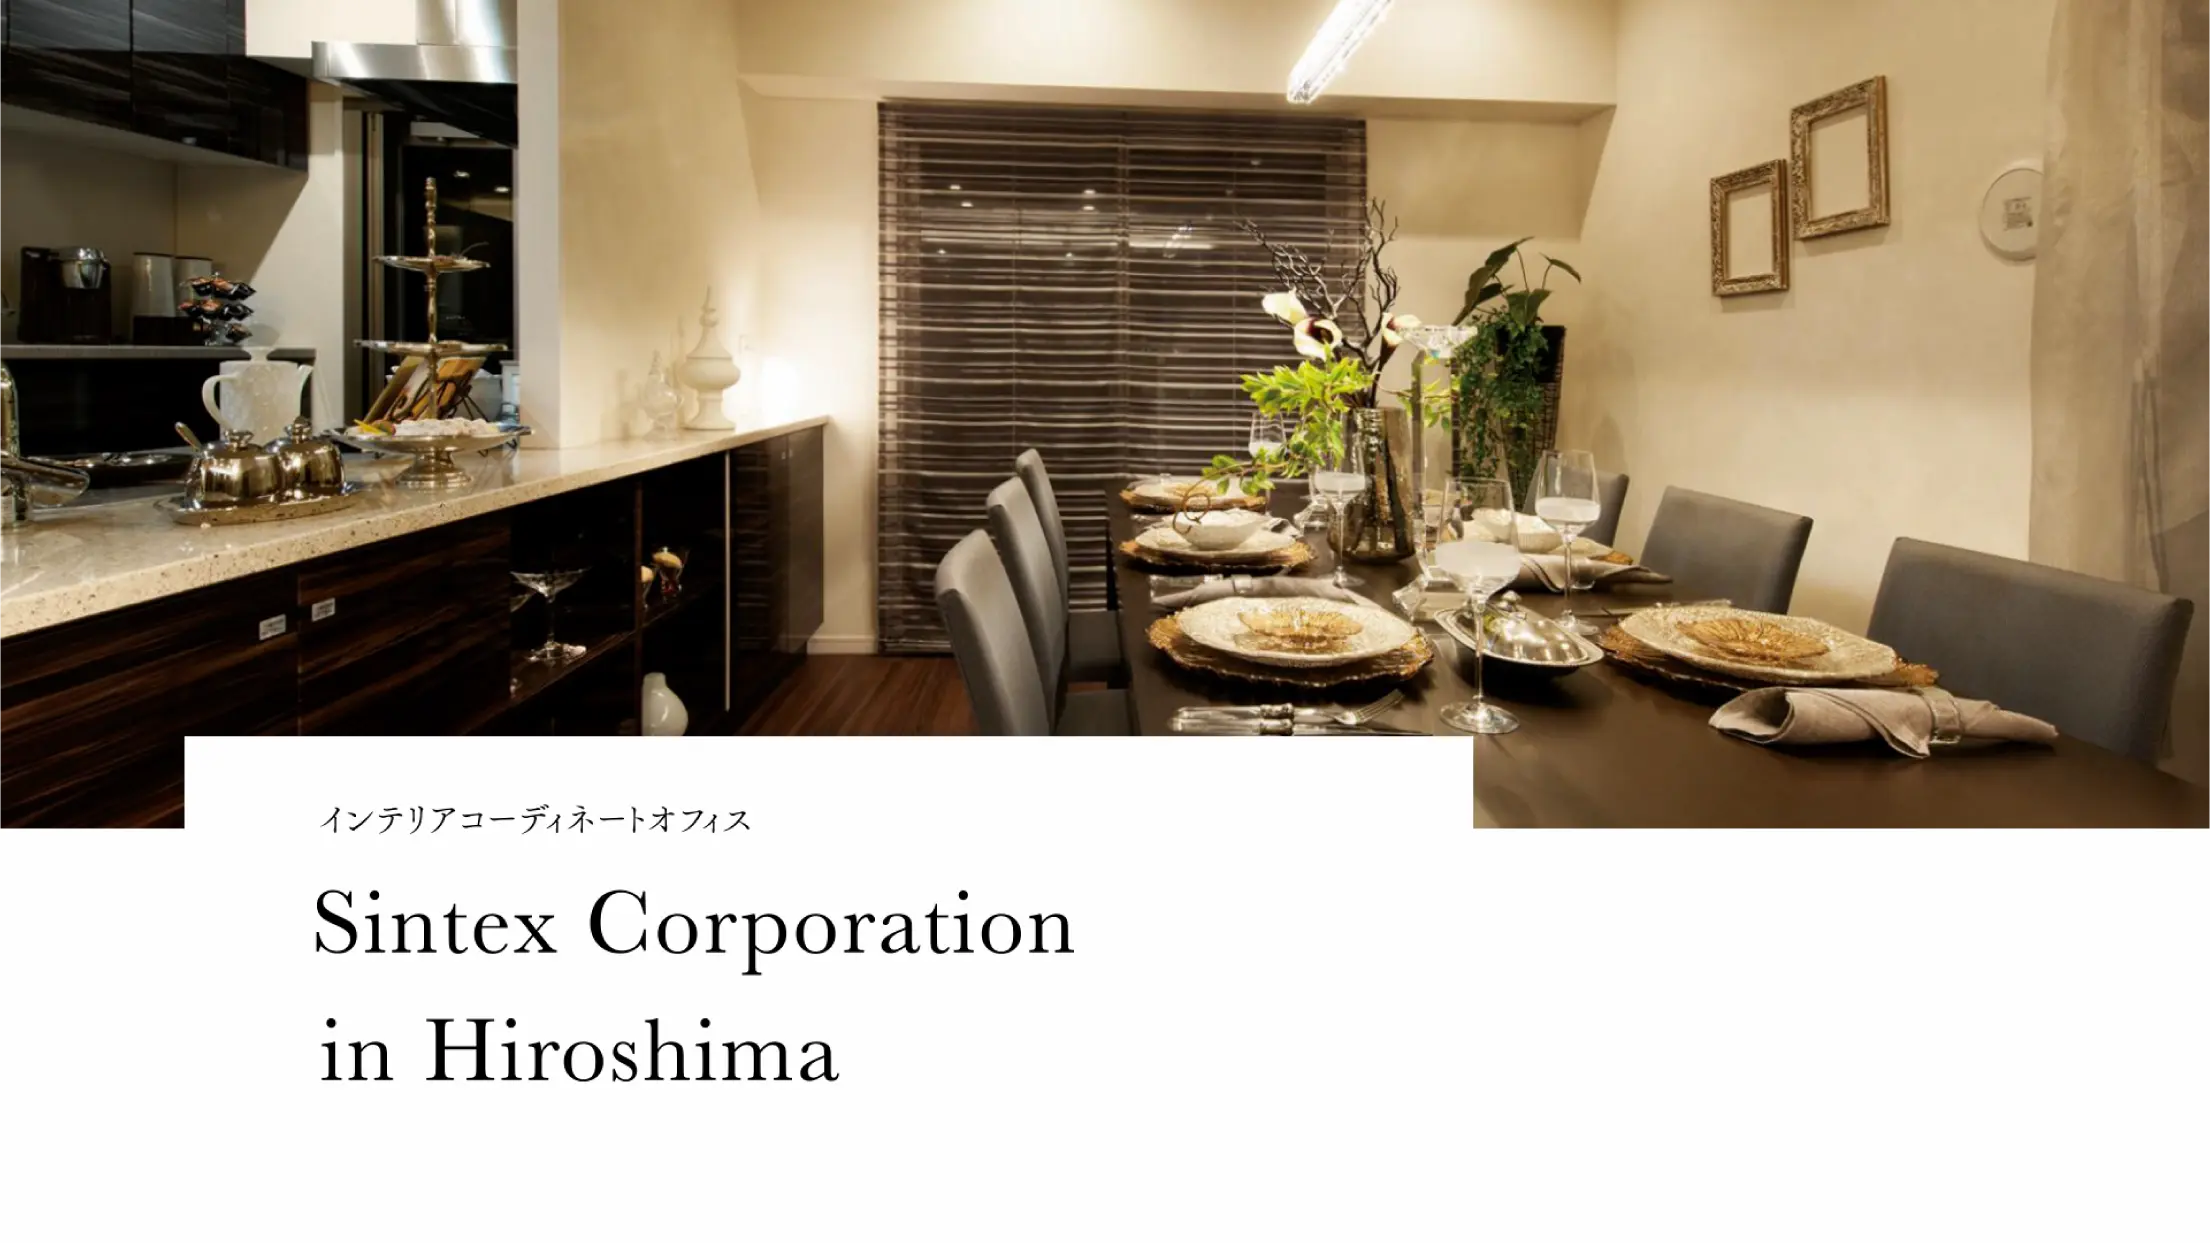 インテリアコーディネートオフィス Sintex Corporation in Hiroshima